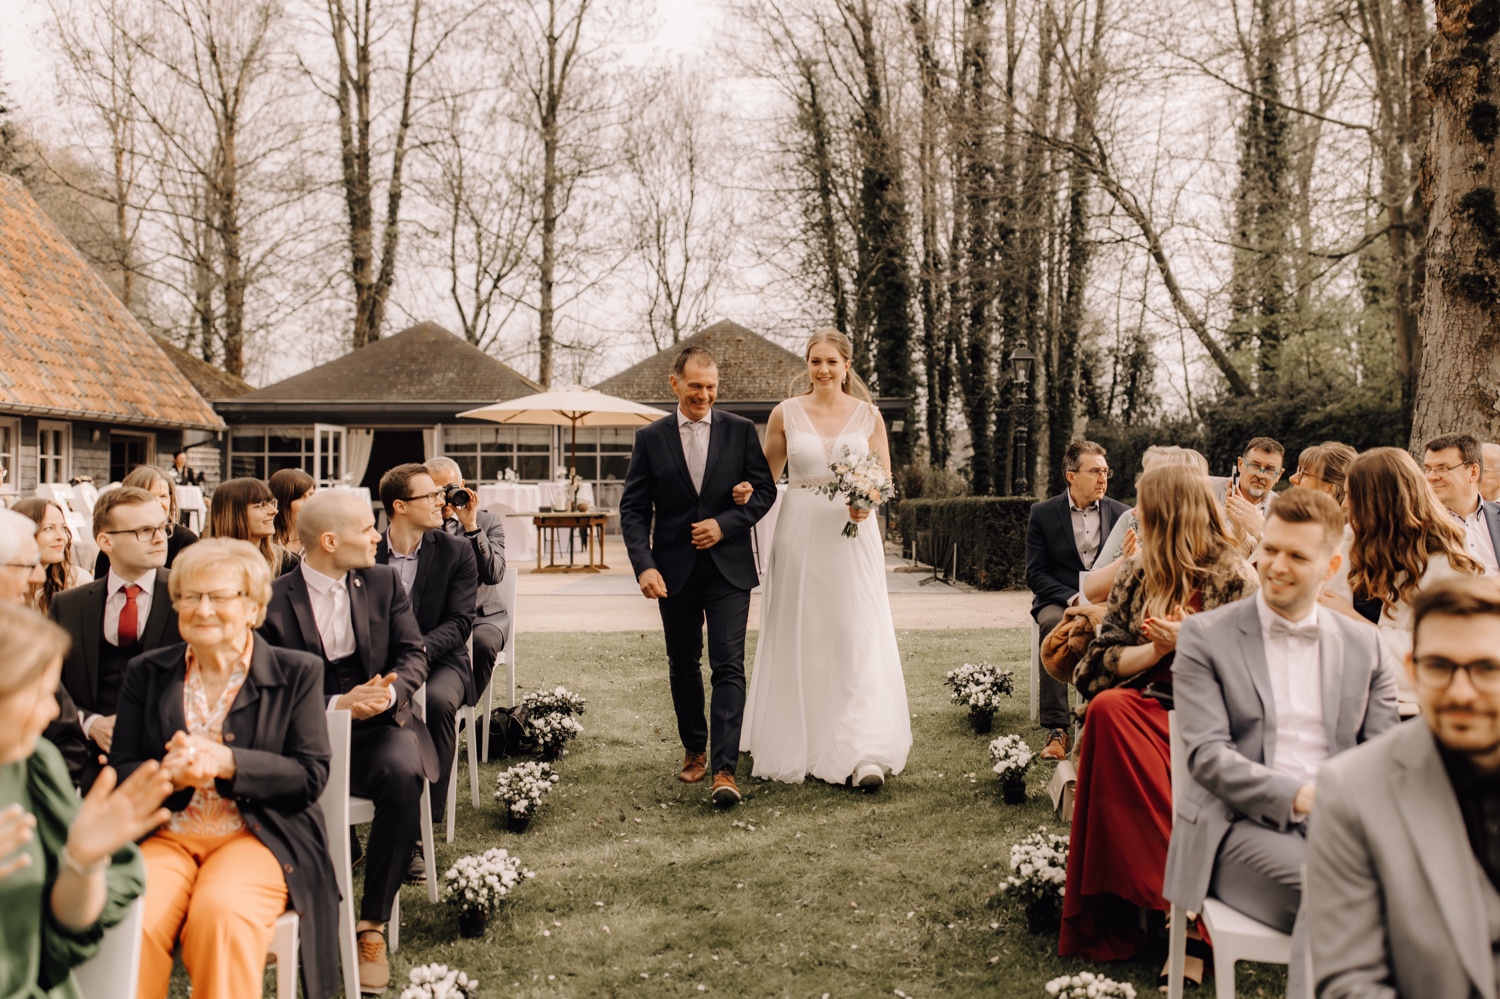 Huwelijksfotograaf Limburg - bruid maakt intrede met vader